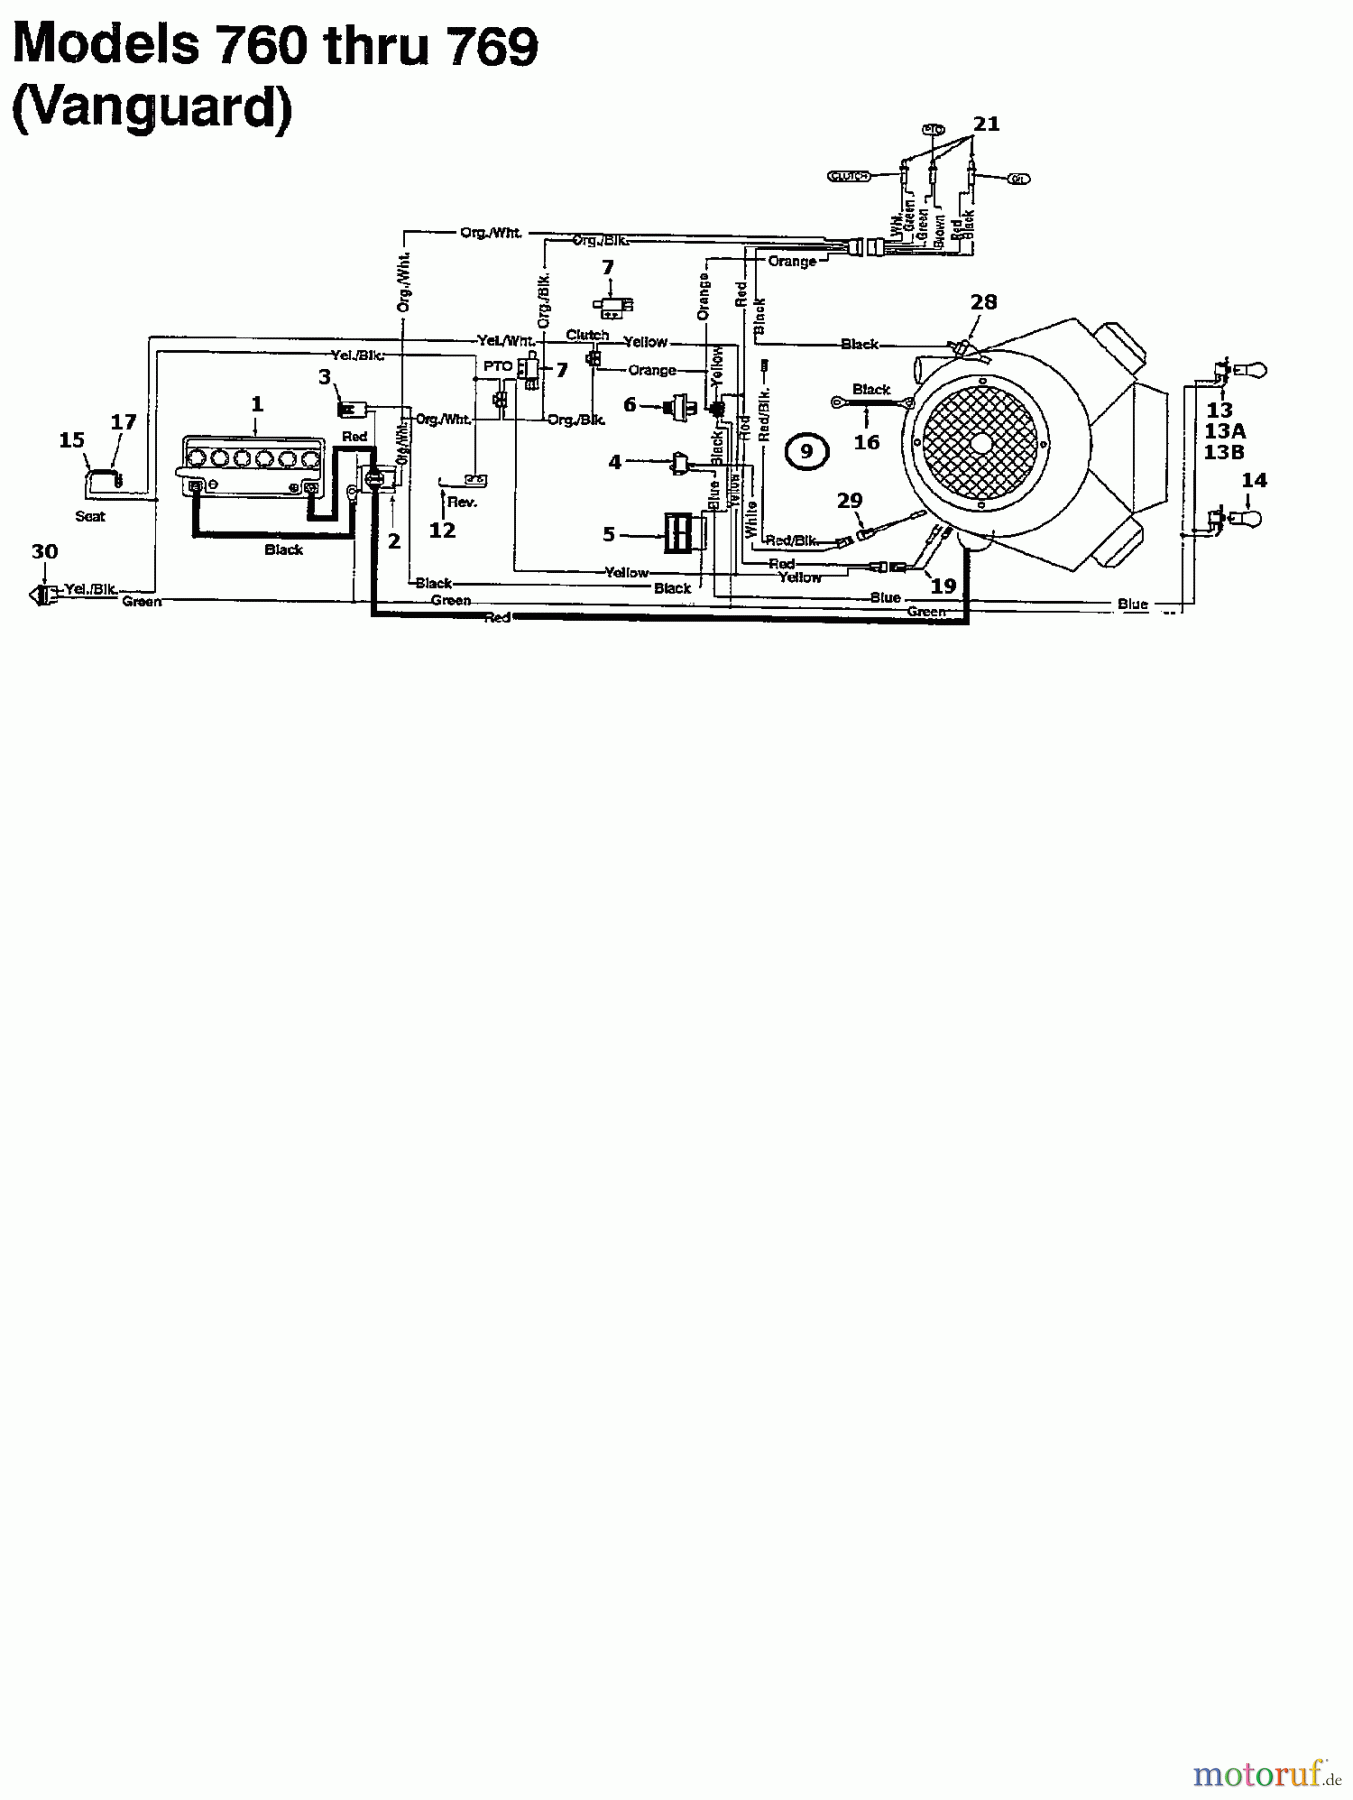  MTD Rasentraktoren 13/102 135N765N678  (1995) Schaltplan Vanguard